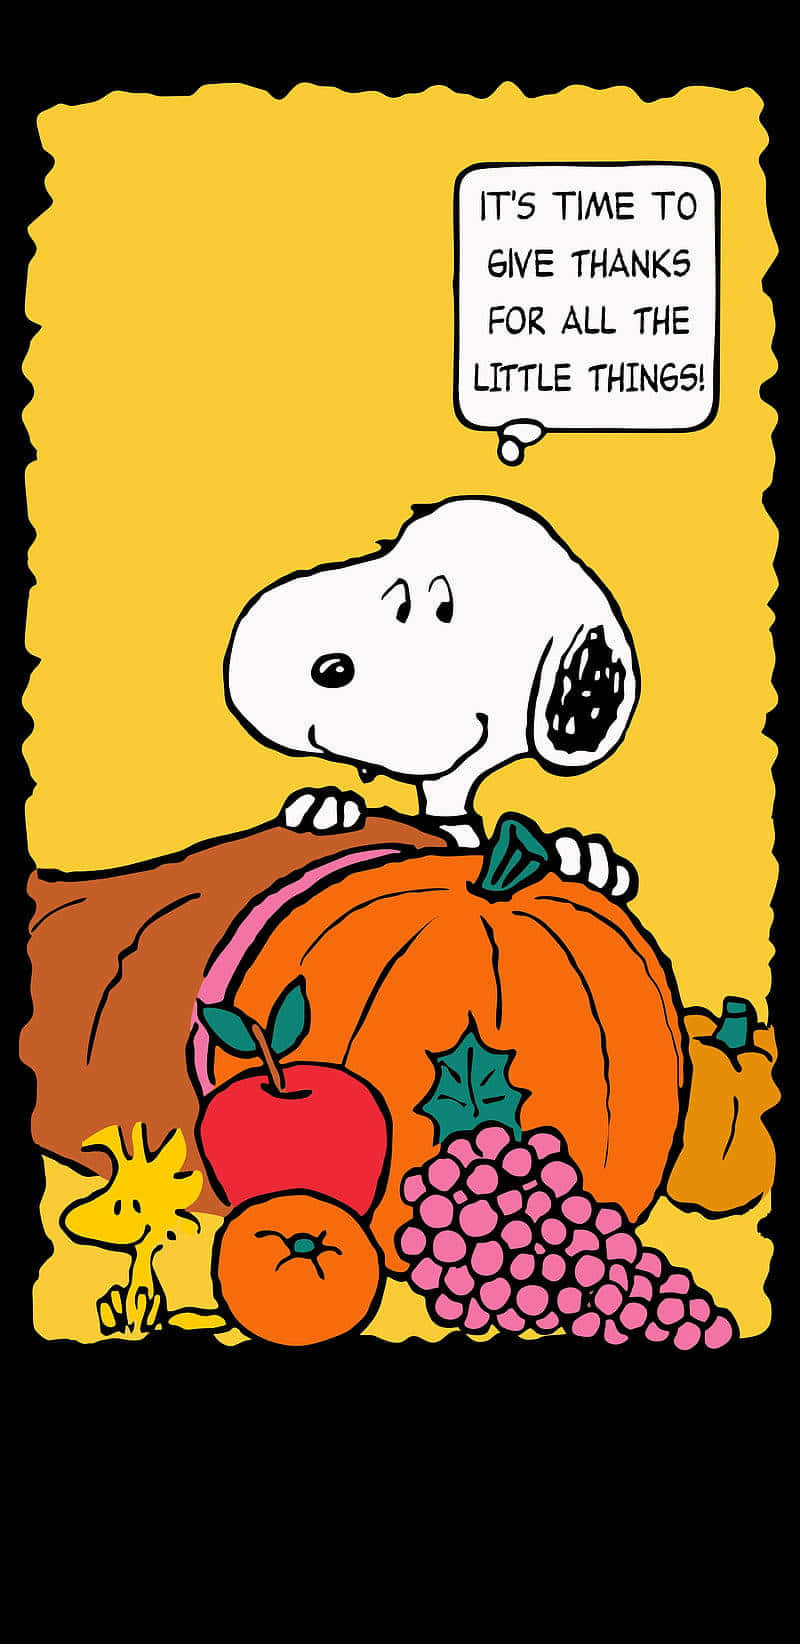 Gladthanksgiving Från Snoopy Wallpaper